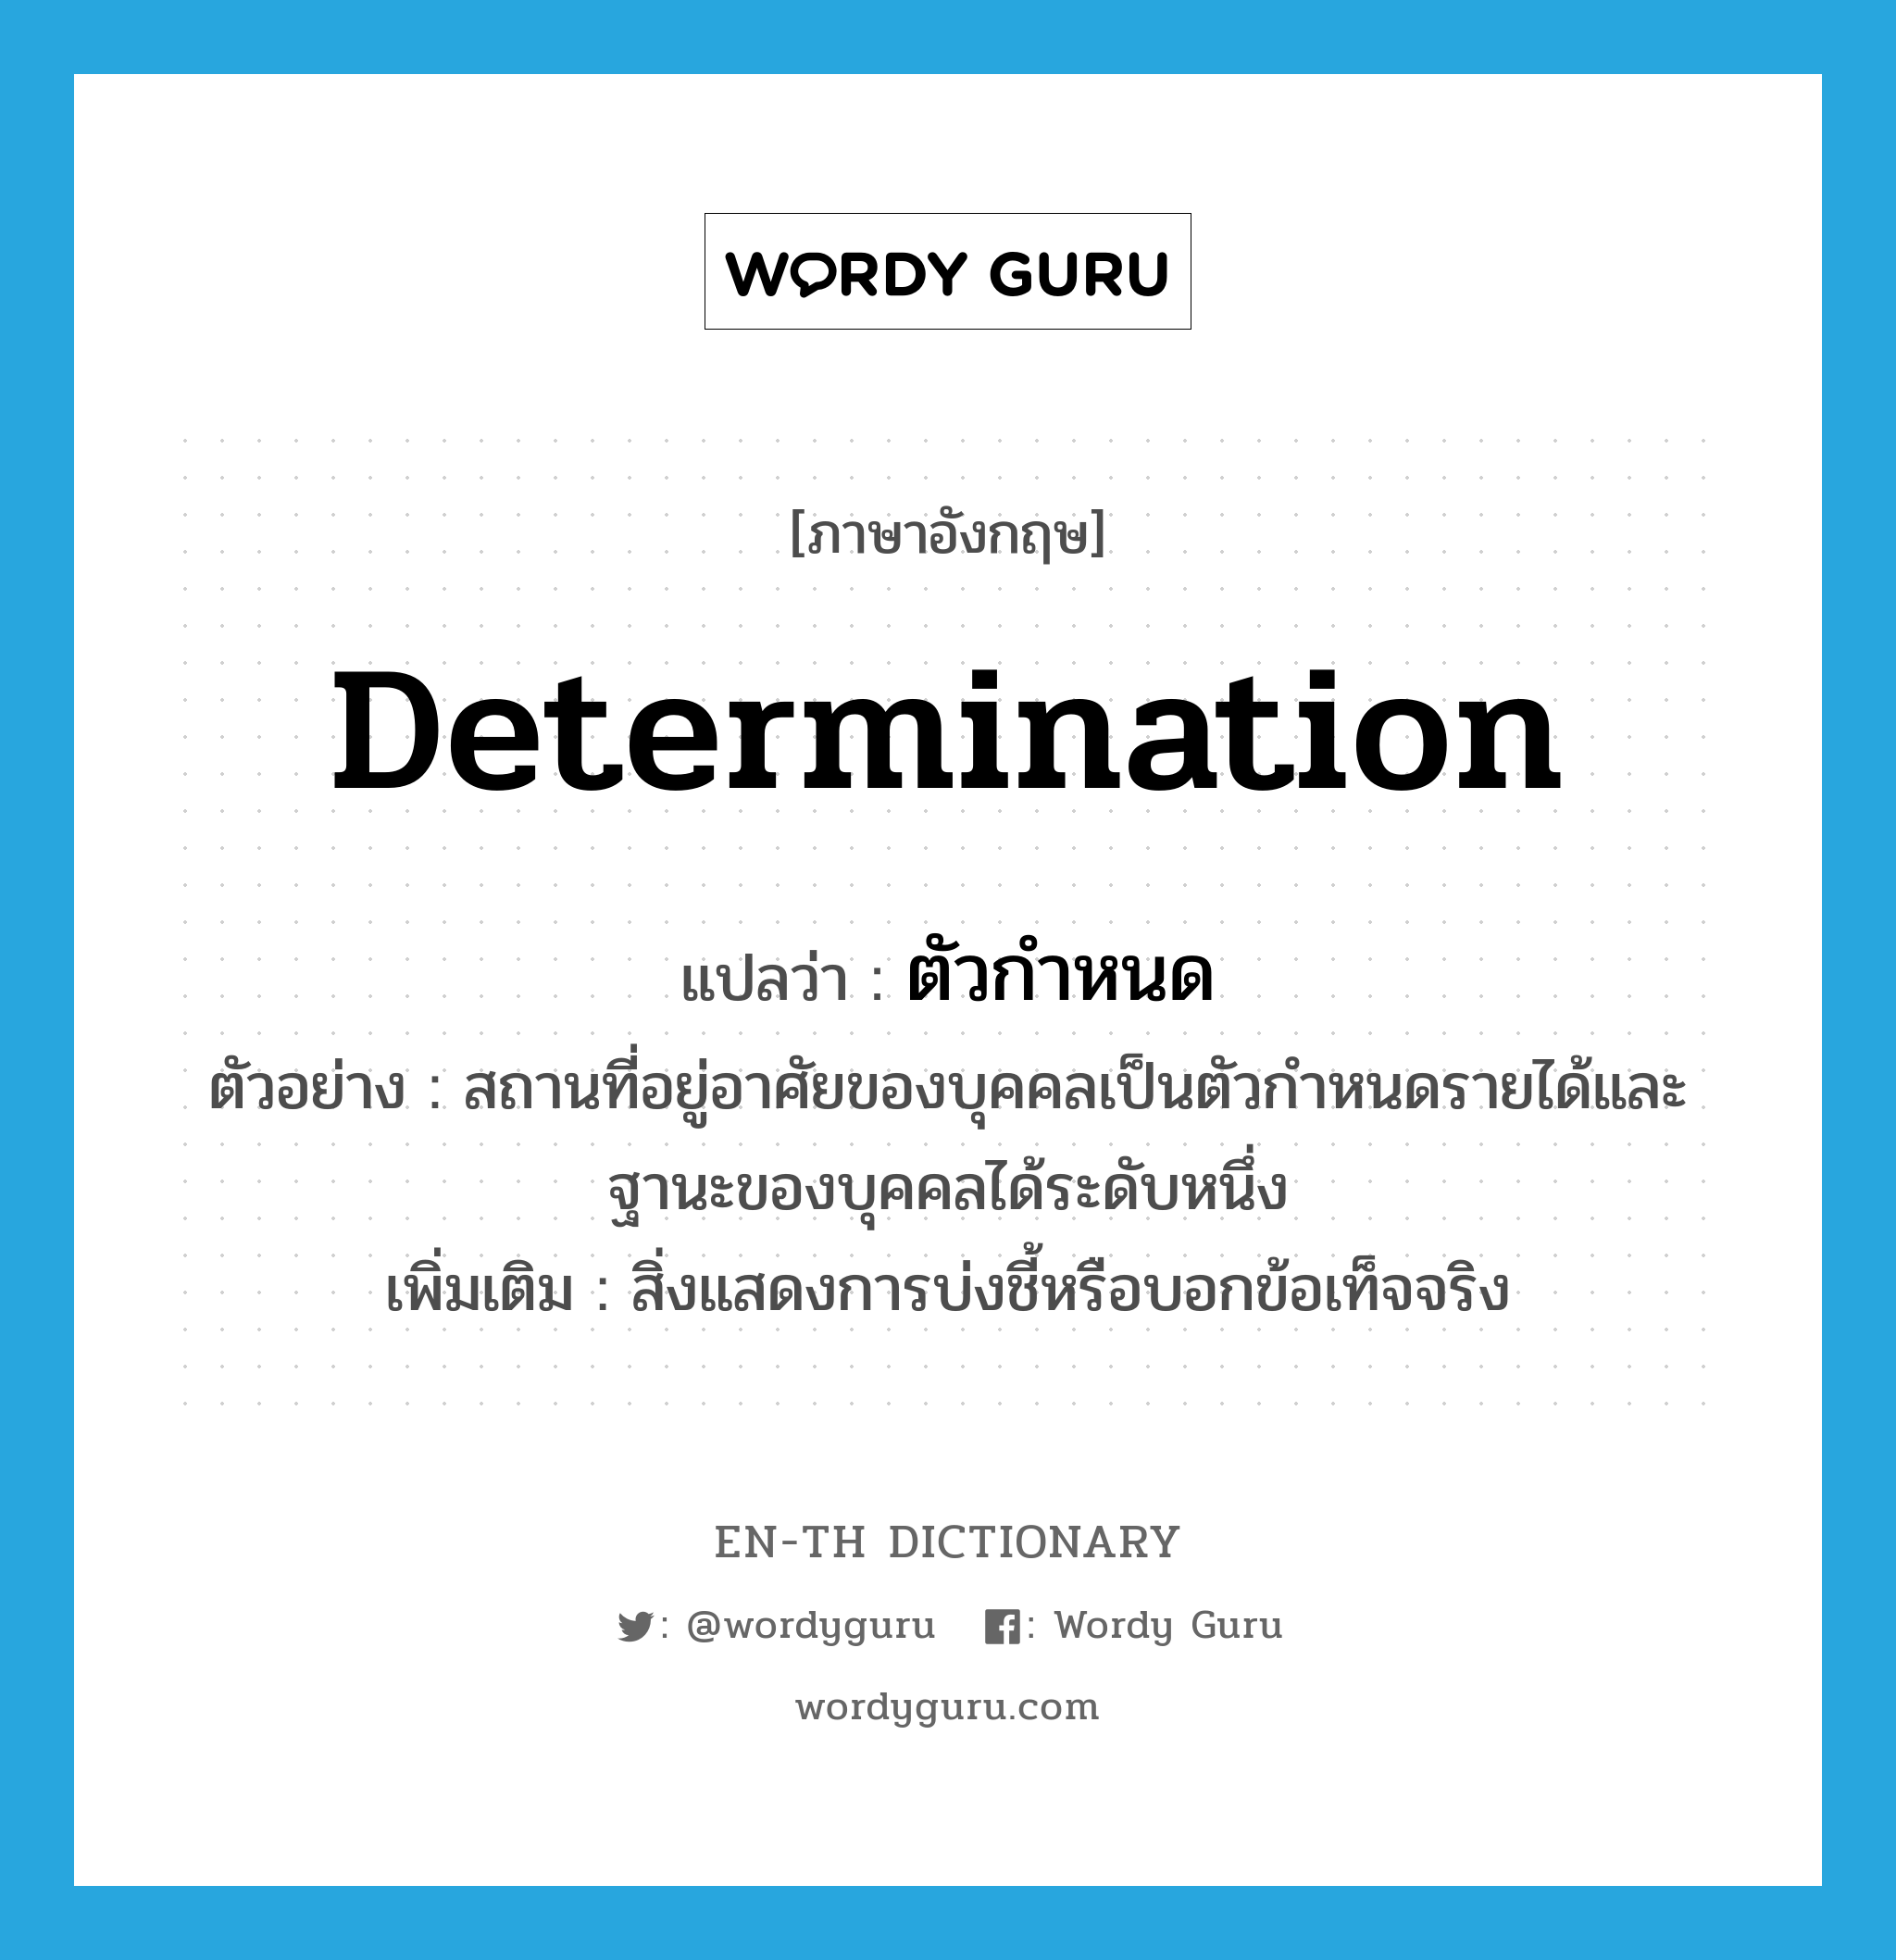 determination แปลว่า?, คำศัพท์ภาษาอังกฤษ determination แปลว่า ตัวกำหนด ประเภท N ตัวอย่าง สถานที่อยู่อาศัยของบุคคลเป็นตัวกำหนดรายได้และฐานะของบุคคลได้ระดับหนึ่ง เพิ่มเติม สิ่งแสดงการบ่งชี้หรือบอกข้อเท็จจริง หมวด N